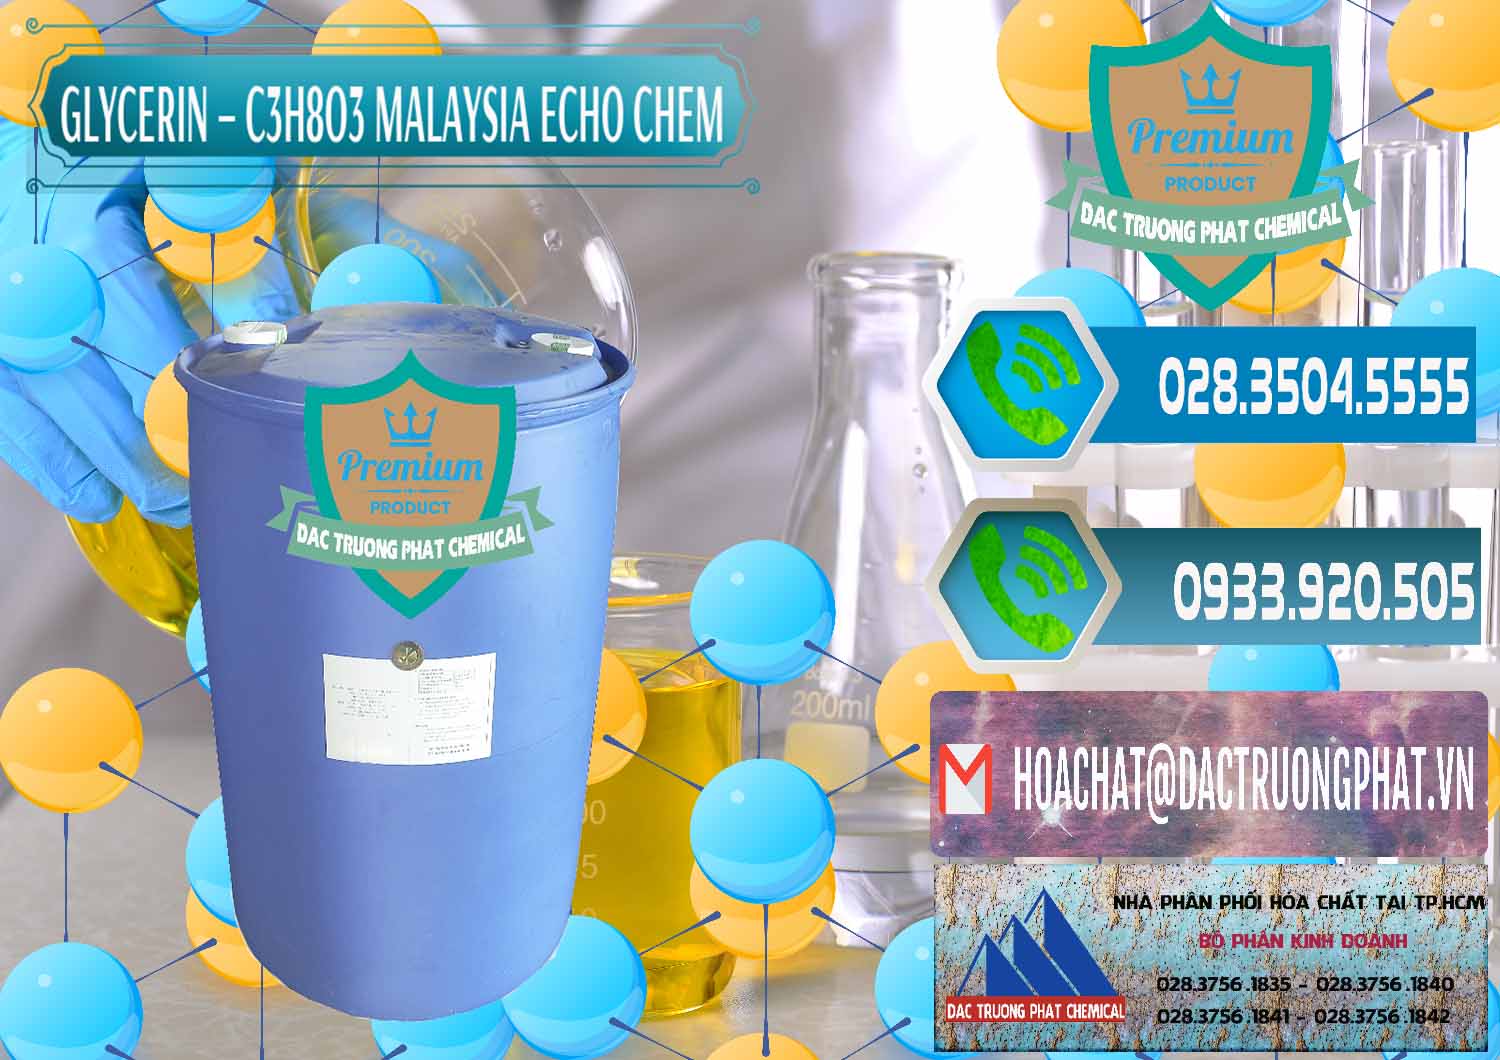 Nơi cung cấp ( bán ) Glycerin – C3H8O3 99.7% Echo Chem Malaysia - 0273 - Nơi cung cấp - kinh doanh hóa chất tại TP.HCM - congtyhoachat.net